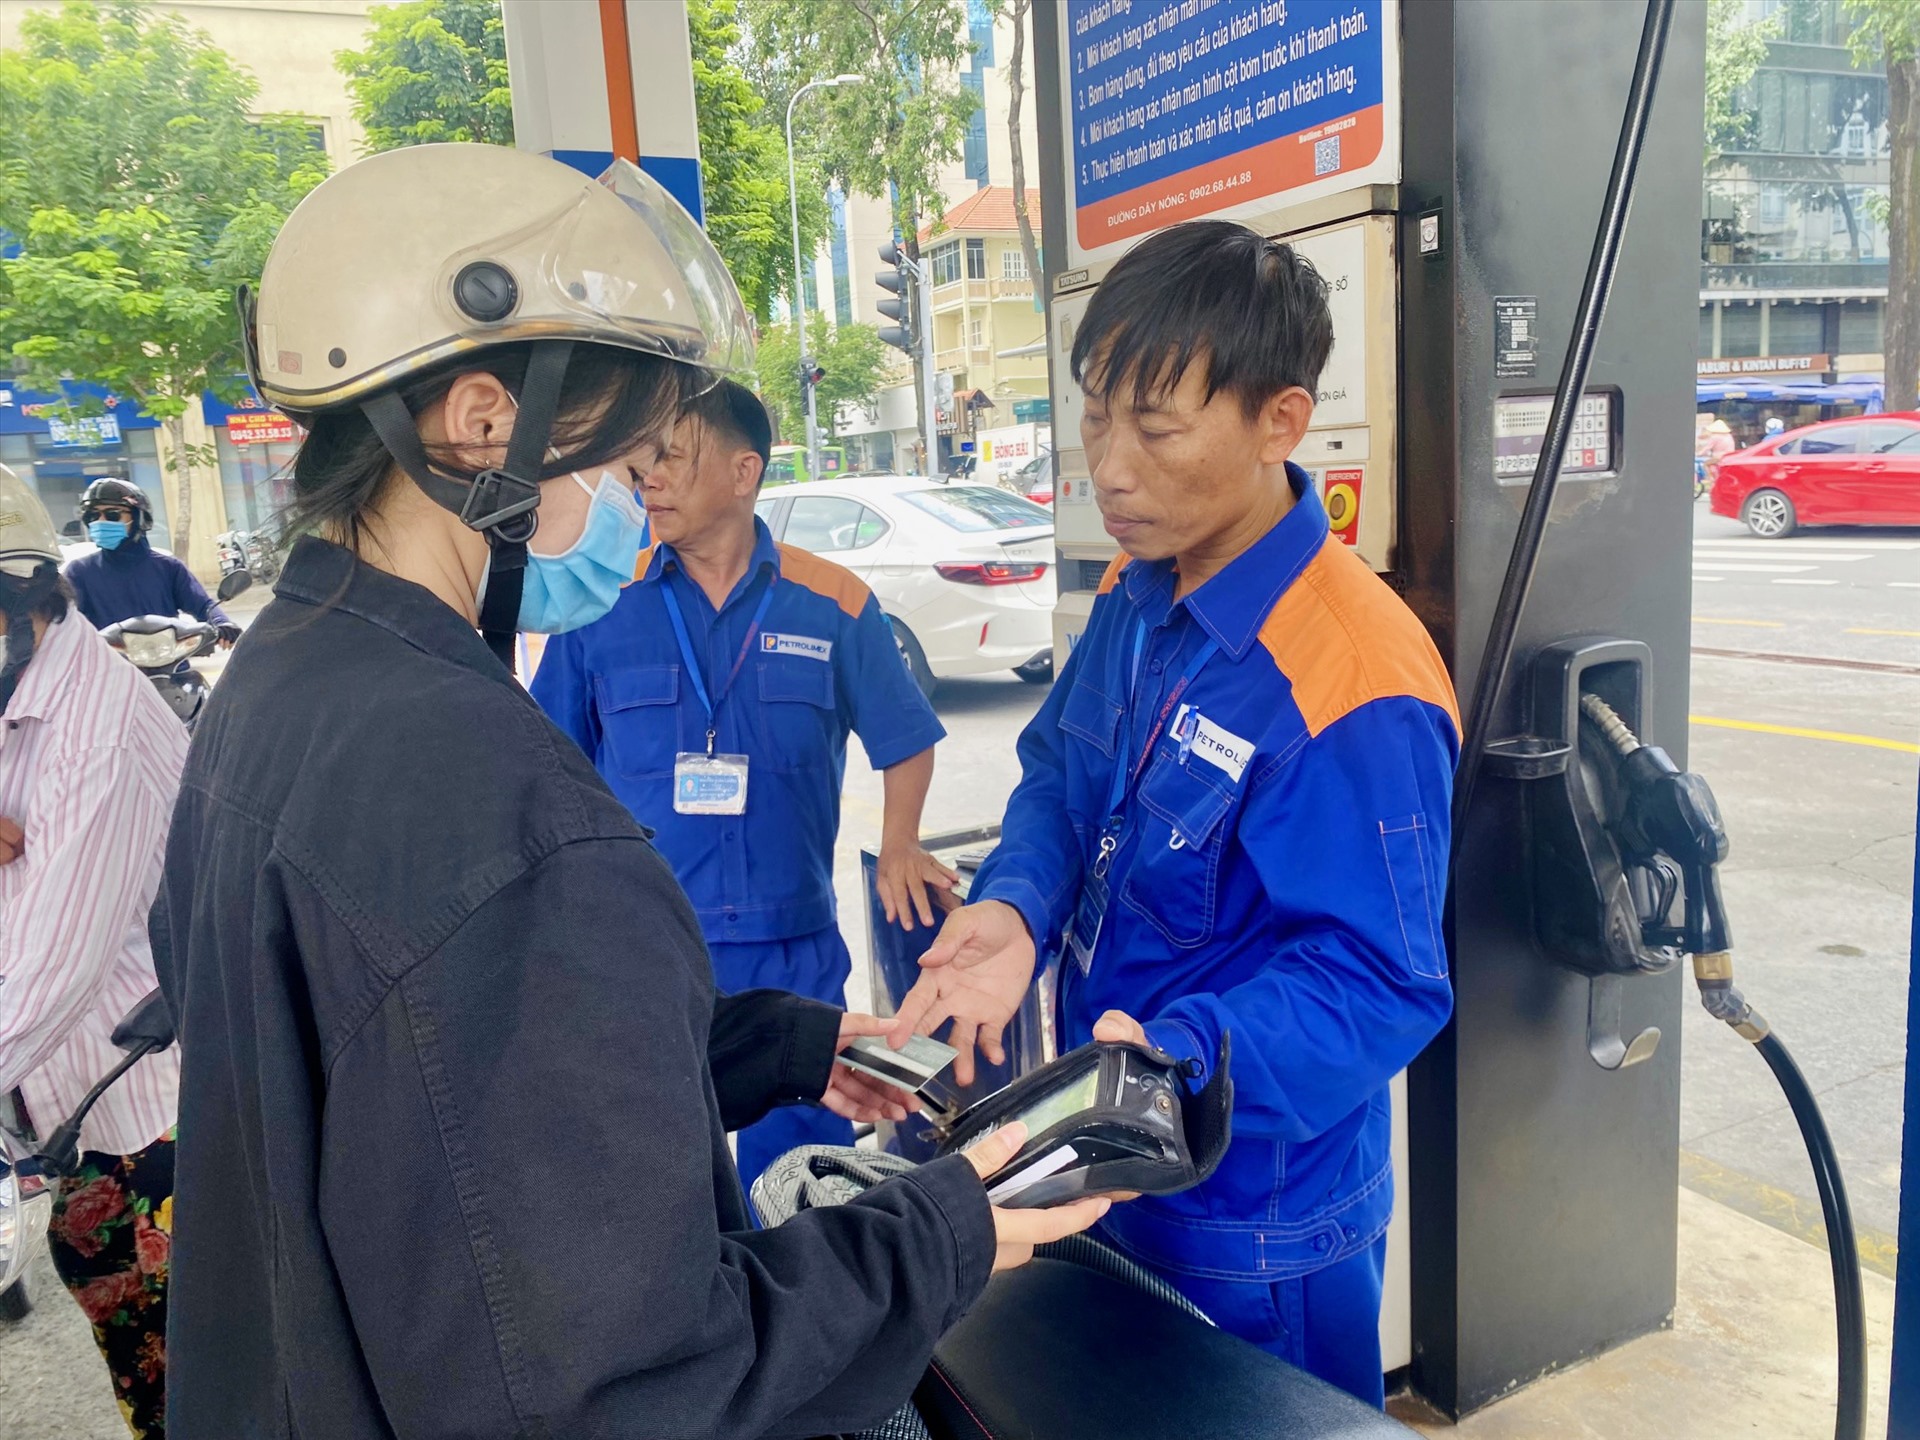 Hiện nay, ở hầu hết các cây xăng lớn tại TP Hồ Chí Minh, người dân khi đến đổ xăng đều có thể thanh toán bằng quẹt thẻ ngân hàng hoặc chuyển khoản. quét mã QR.